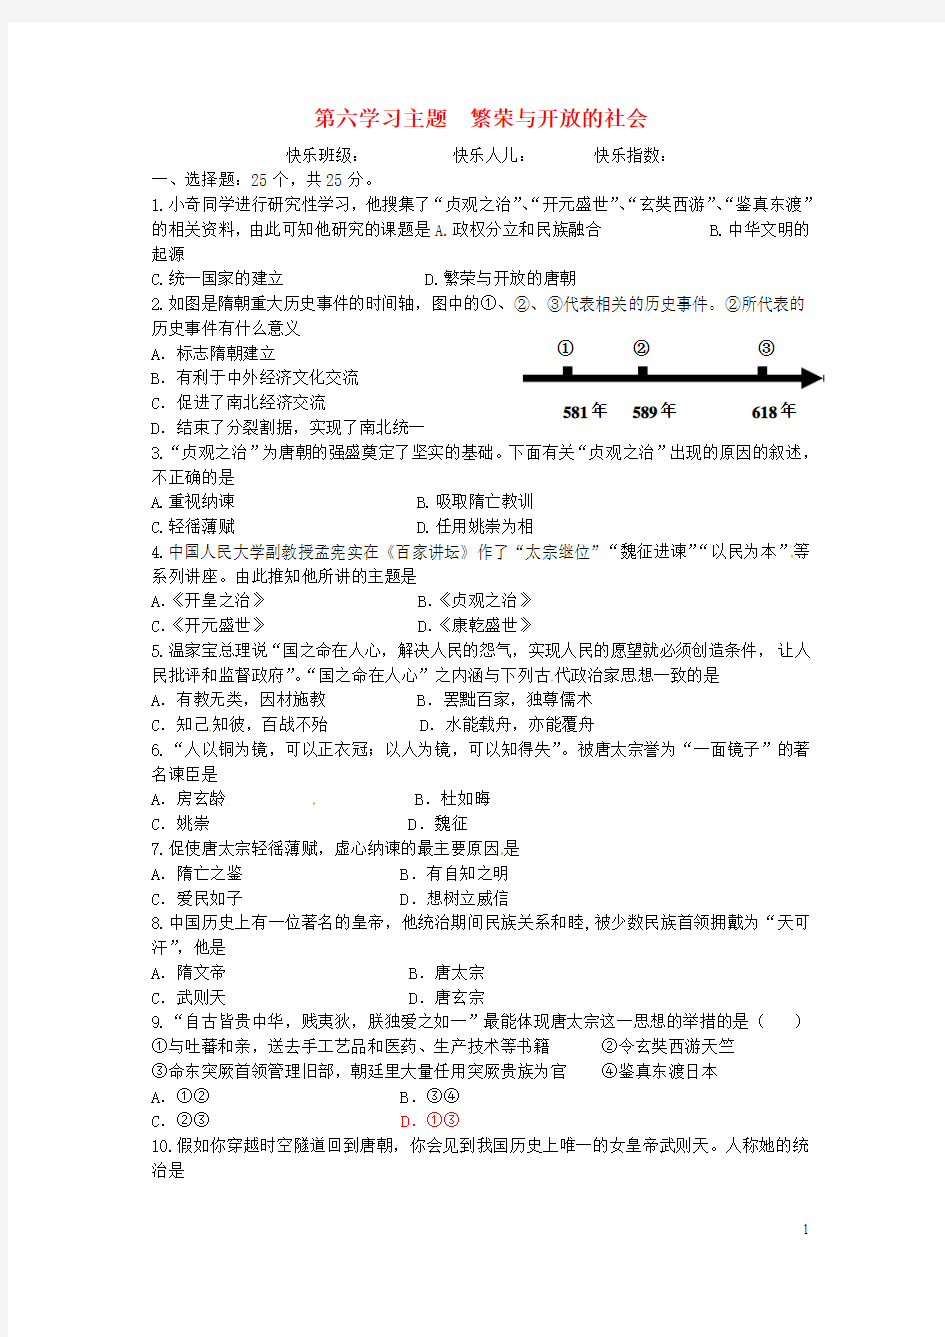 四川省荣县五宝中学七年级历史下册 第六学习主题《繁荣与开放的社会》同步练习